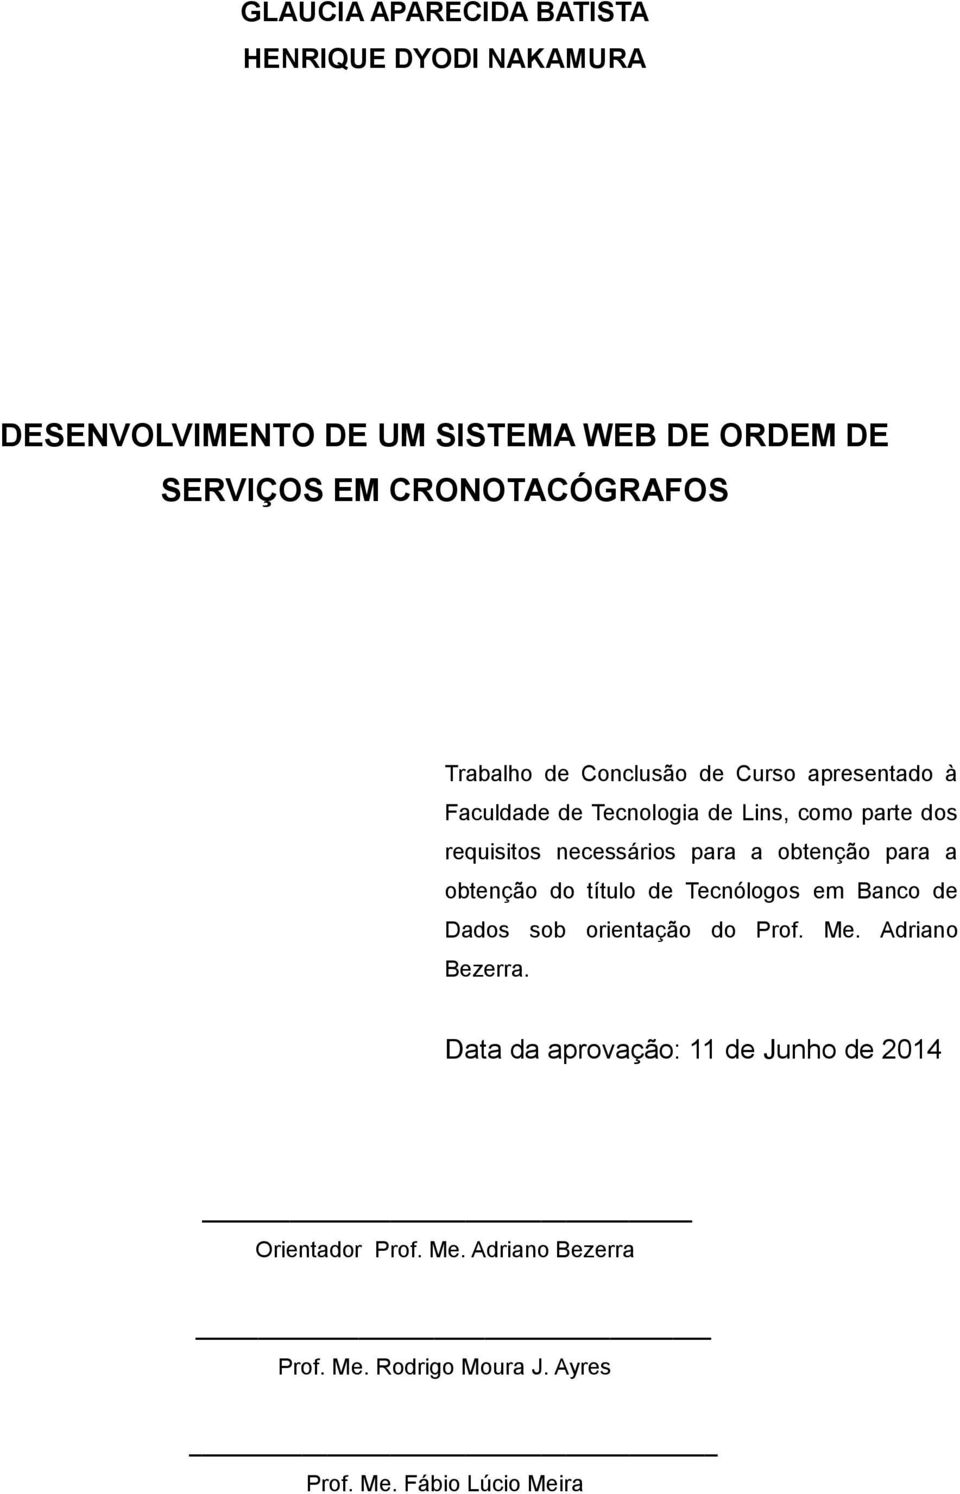 obtenção para a obtenção do título de Tecnólogos em Banco de Dados sob orientação do Prof. Me. Adriano Bezerra.